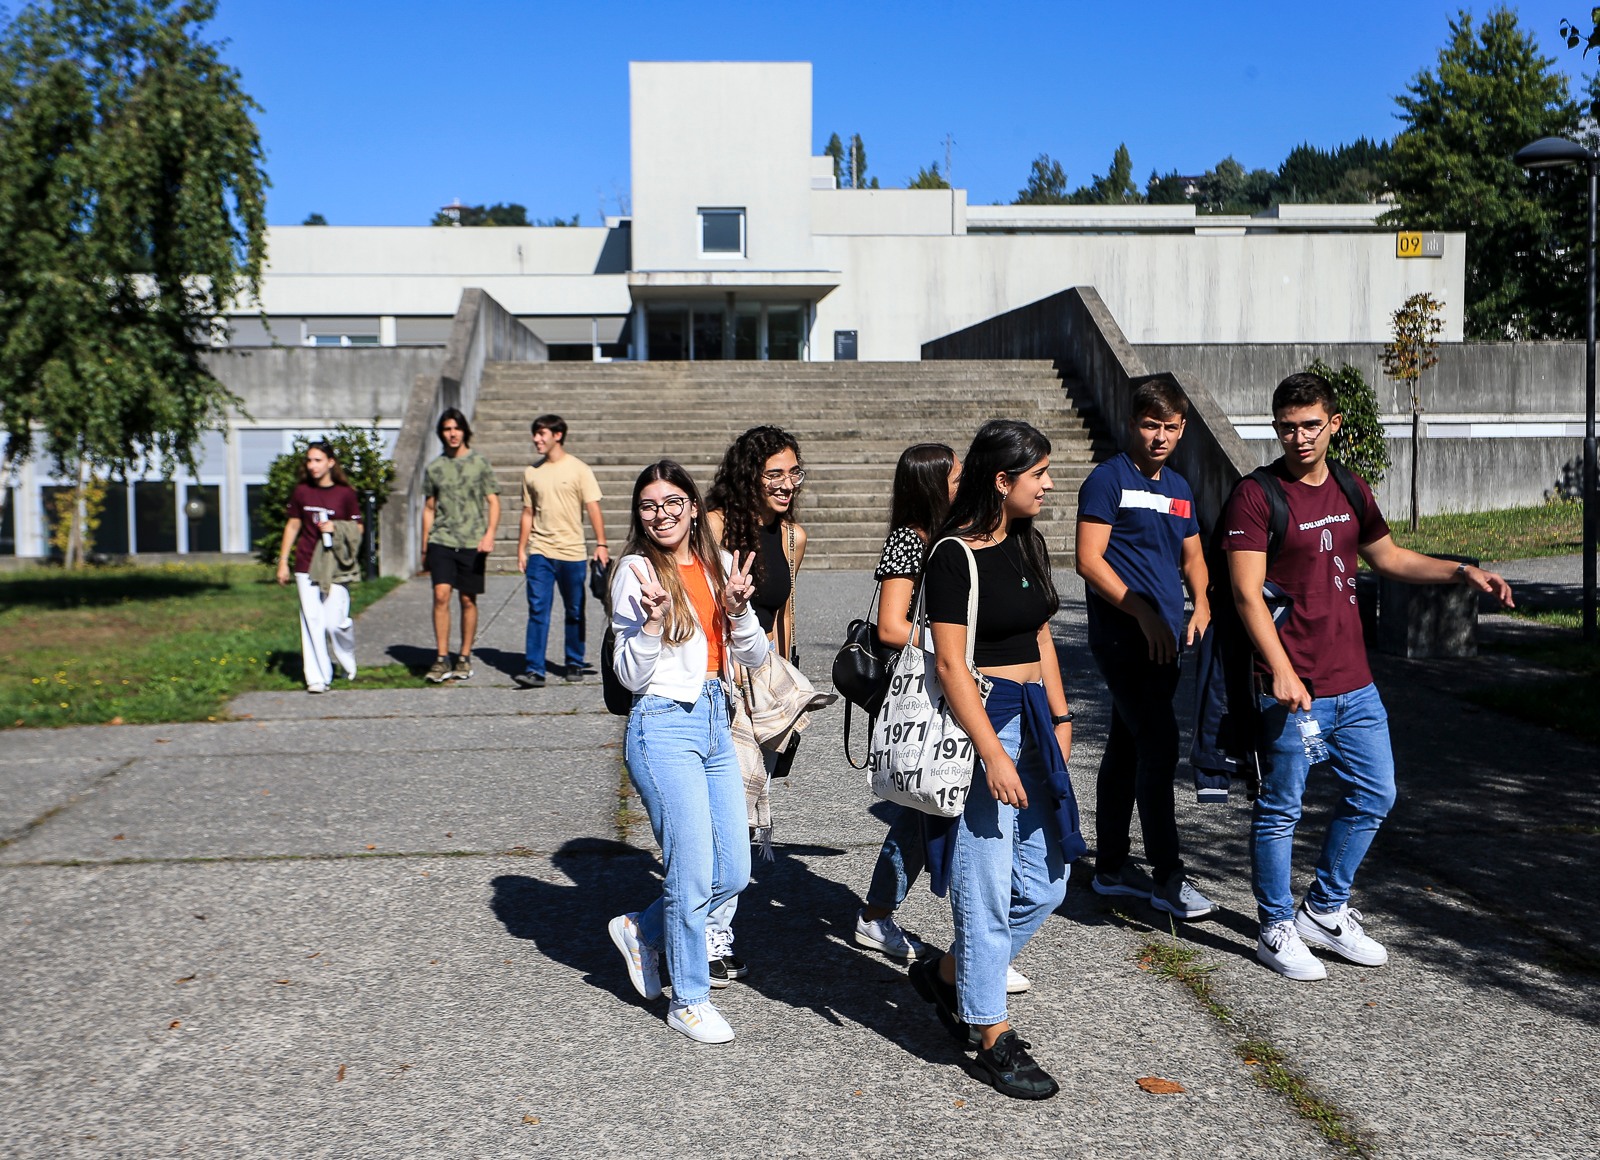 Campus de Azurém, Guimarães (foto: Nuno Gonçalves)